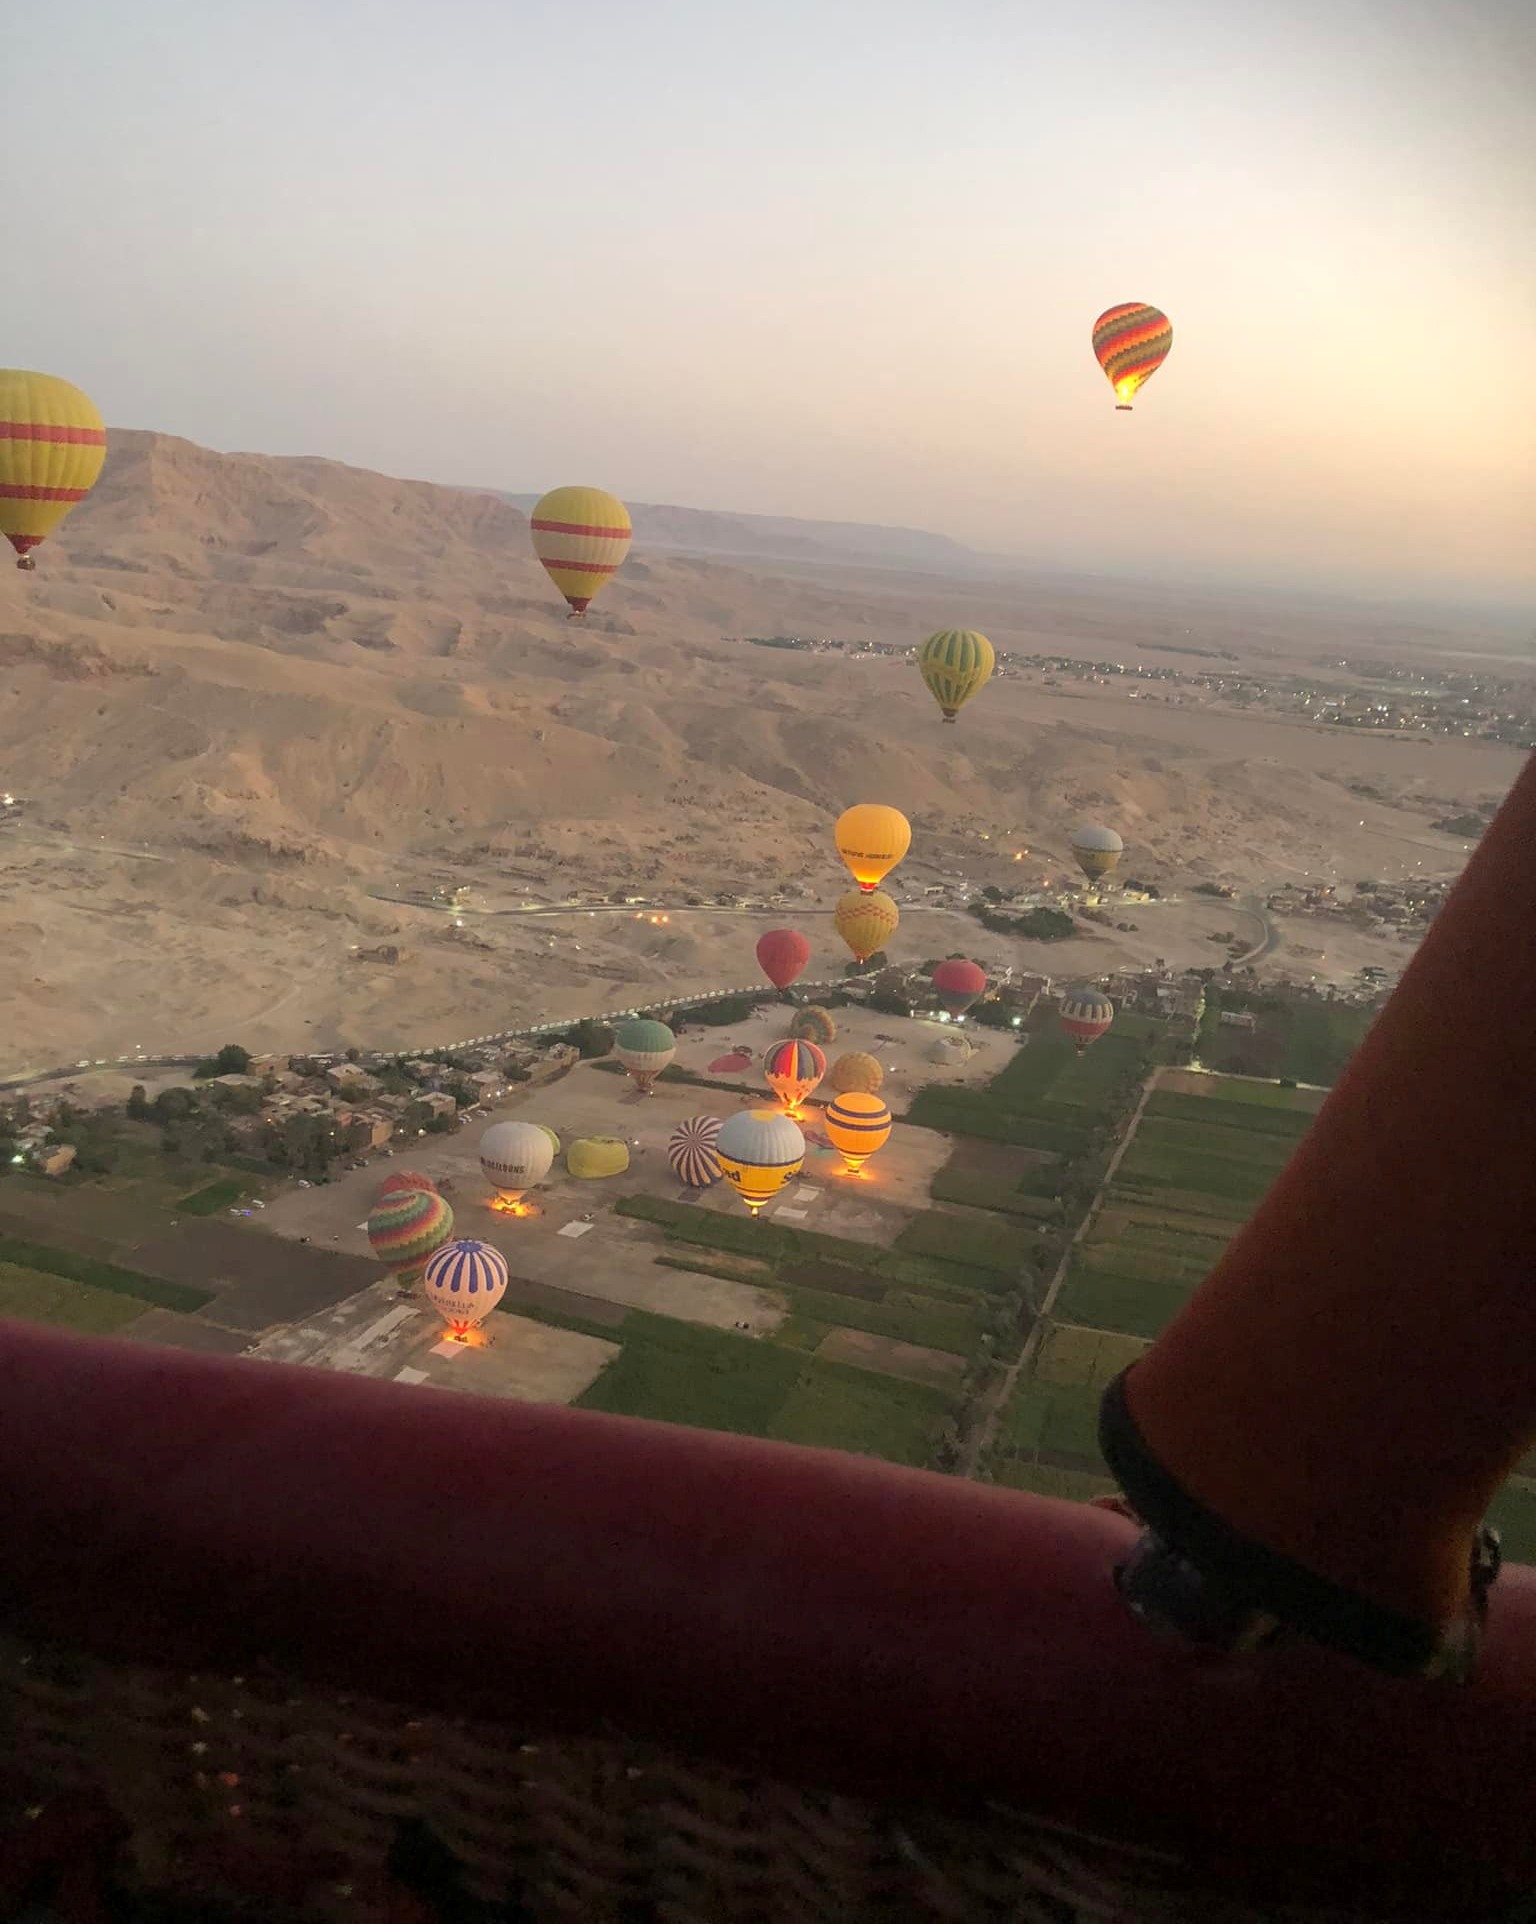 مشهد تحليق الرحلات من إحدي البالونات بالسماء